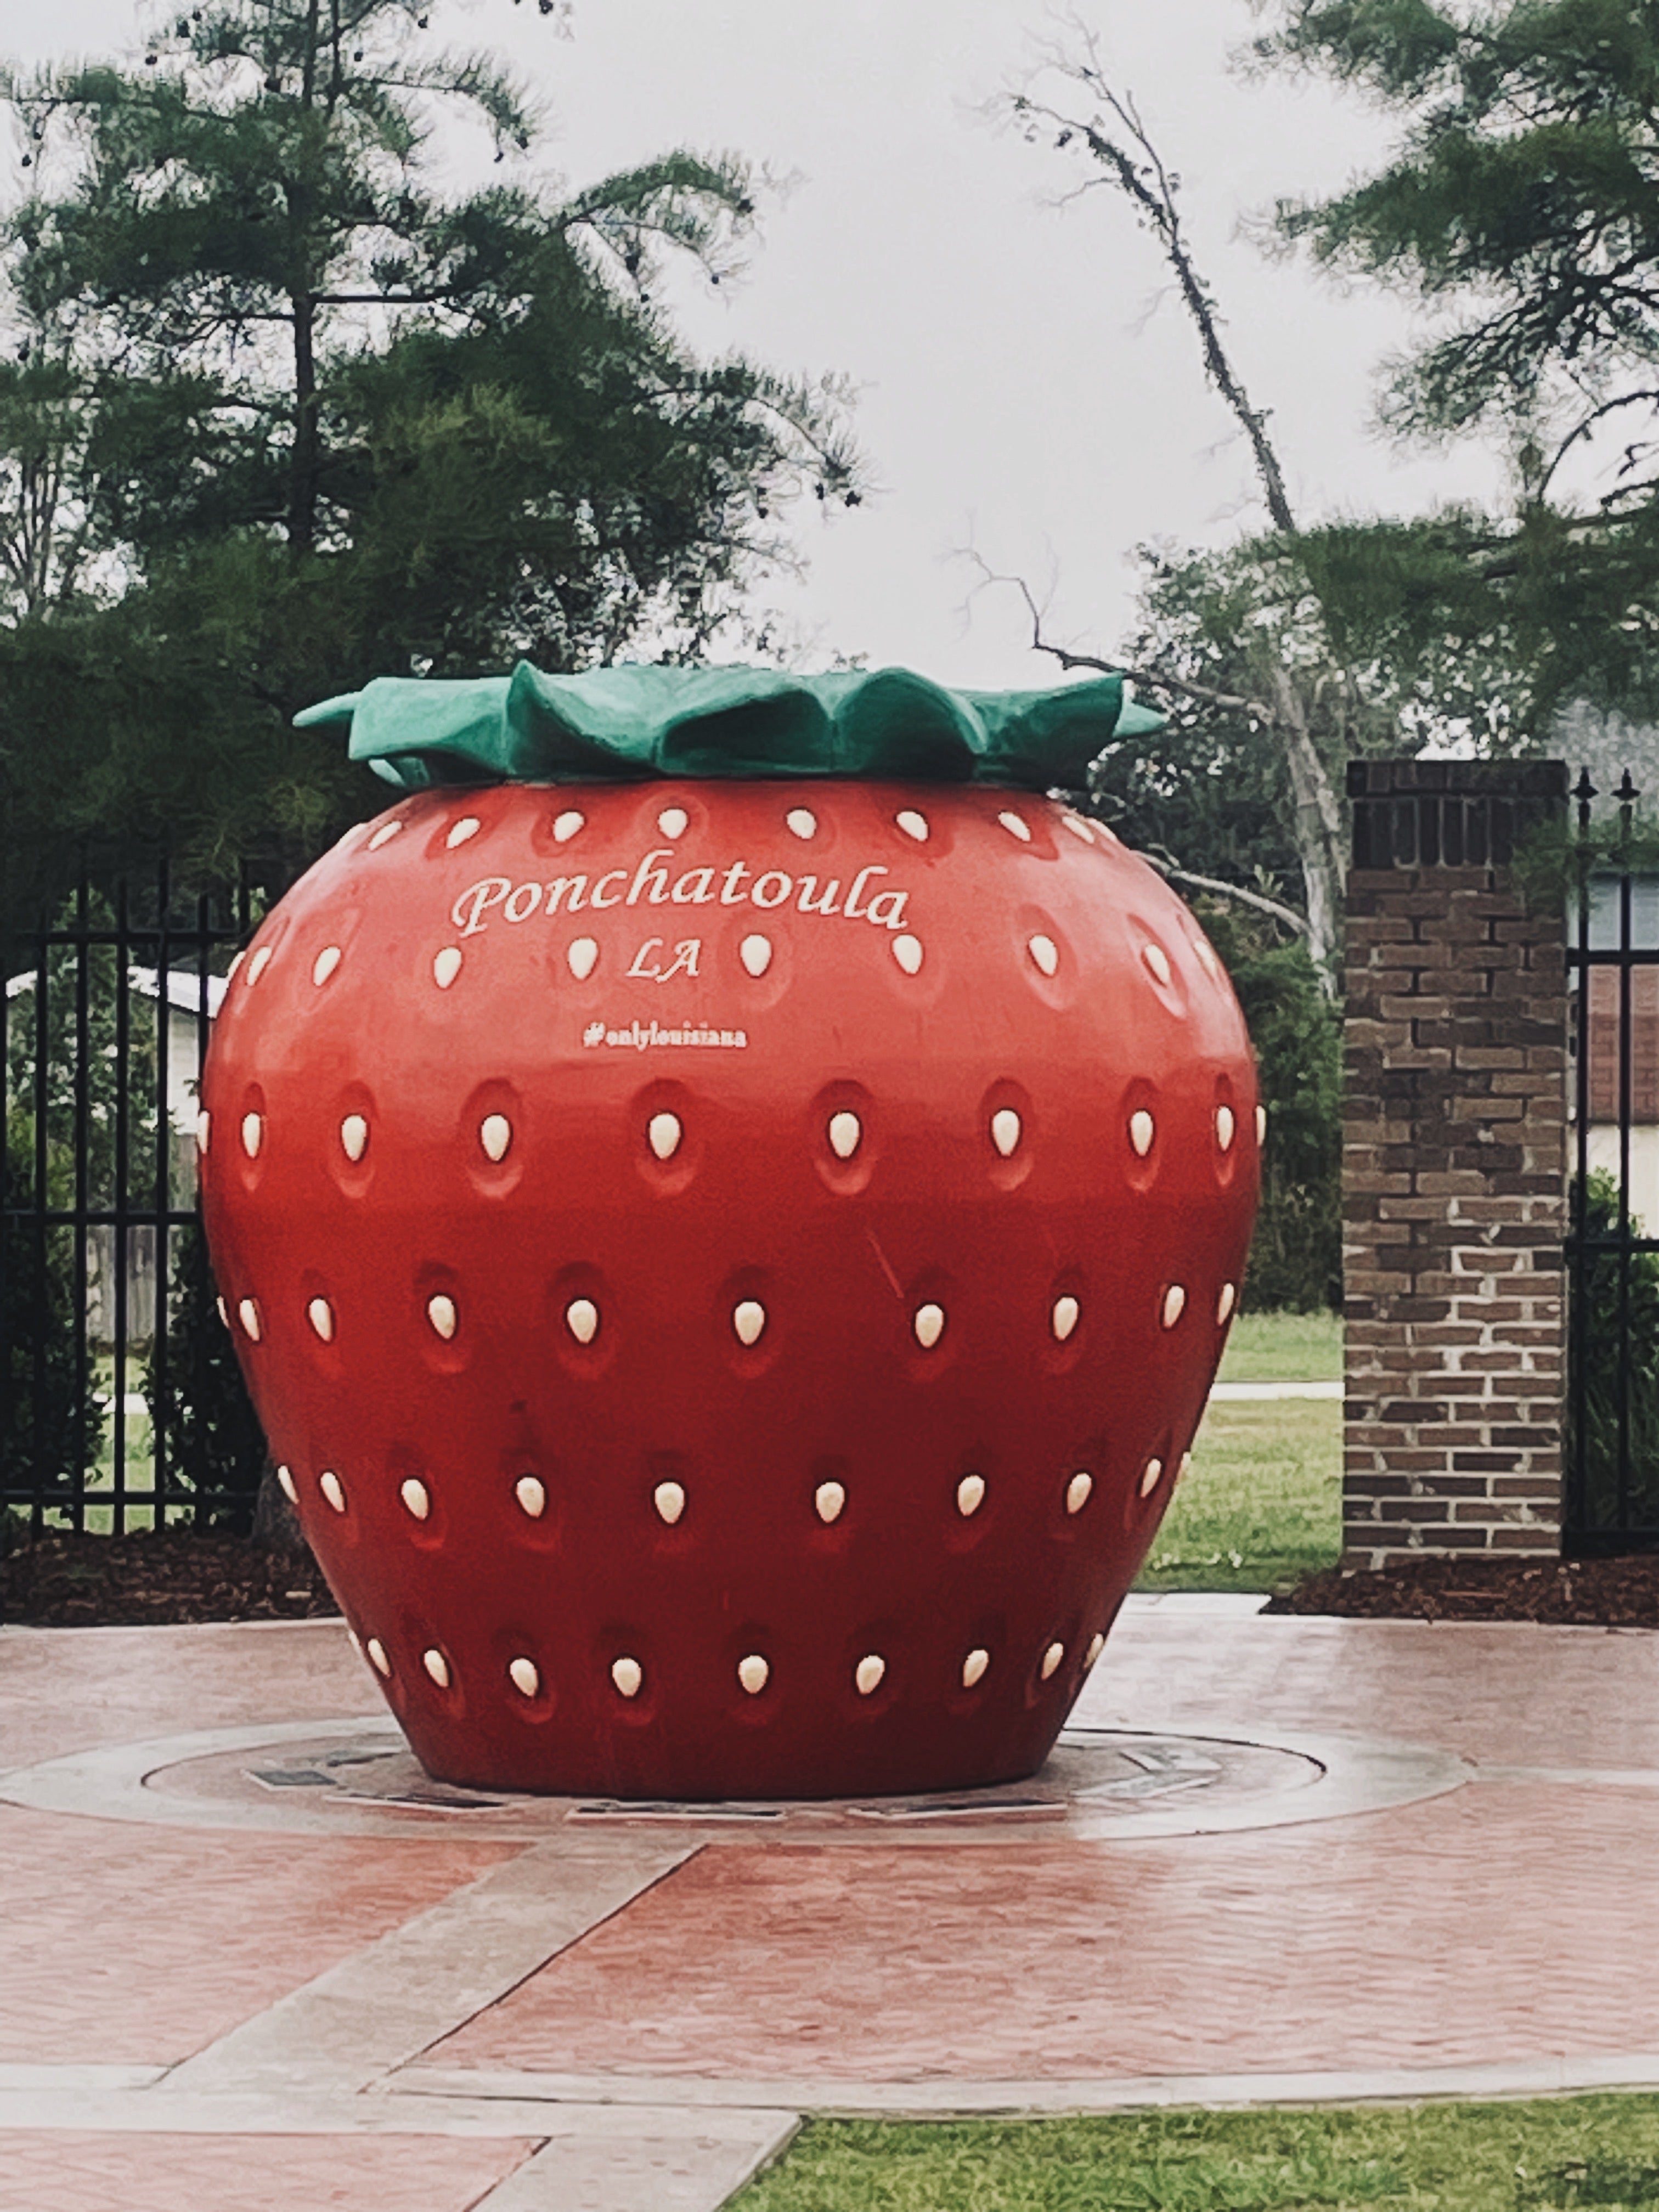 Strawberry Sculpture in Ponchatoula, Louisiana